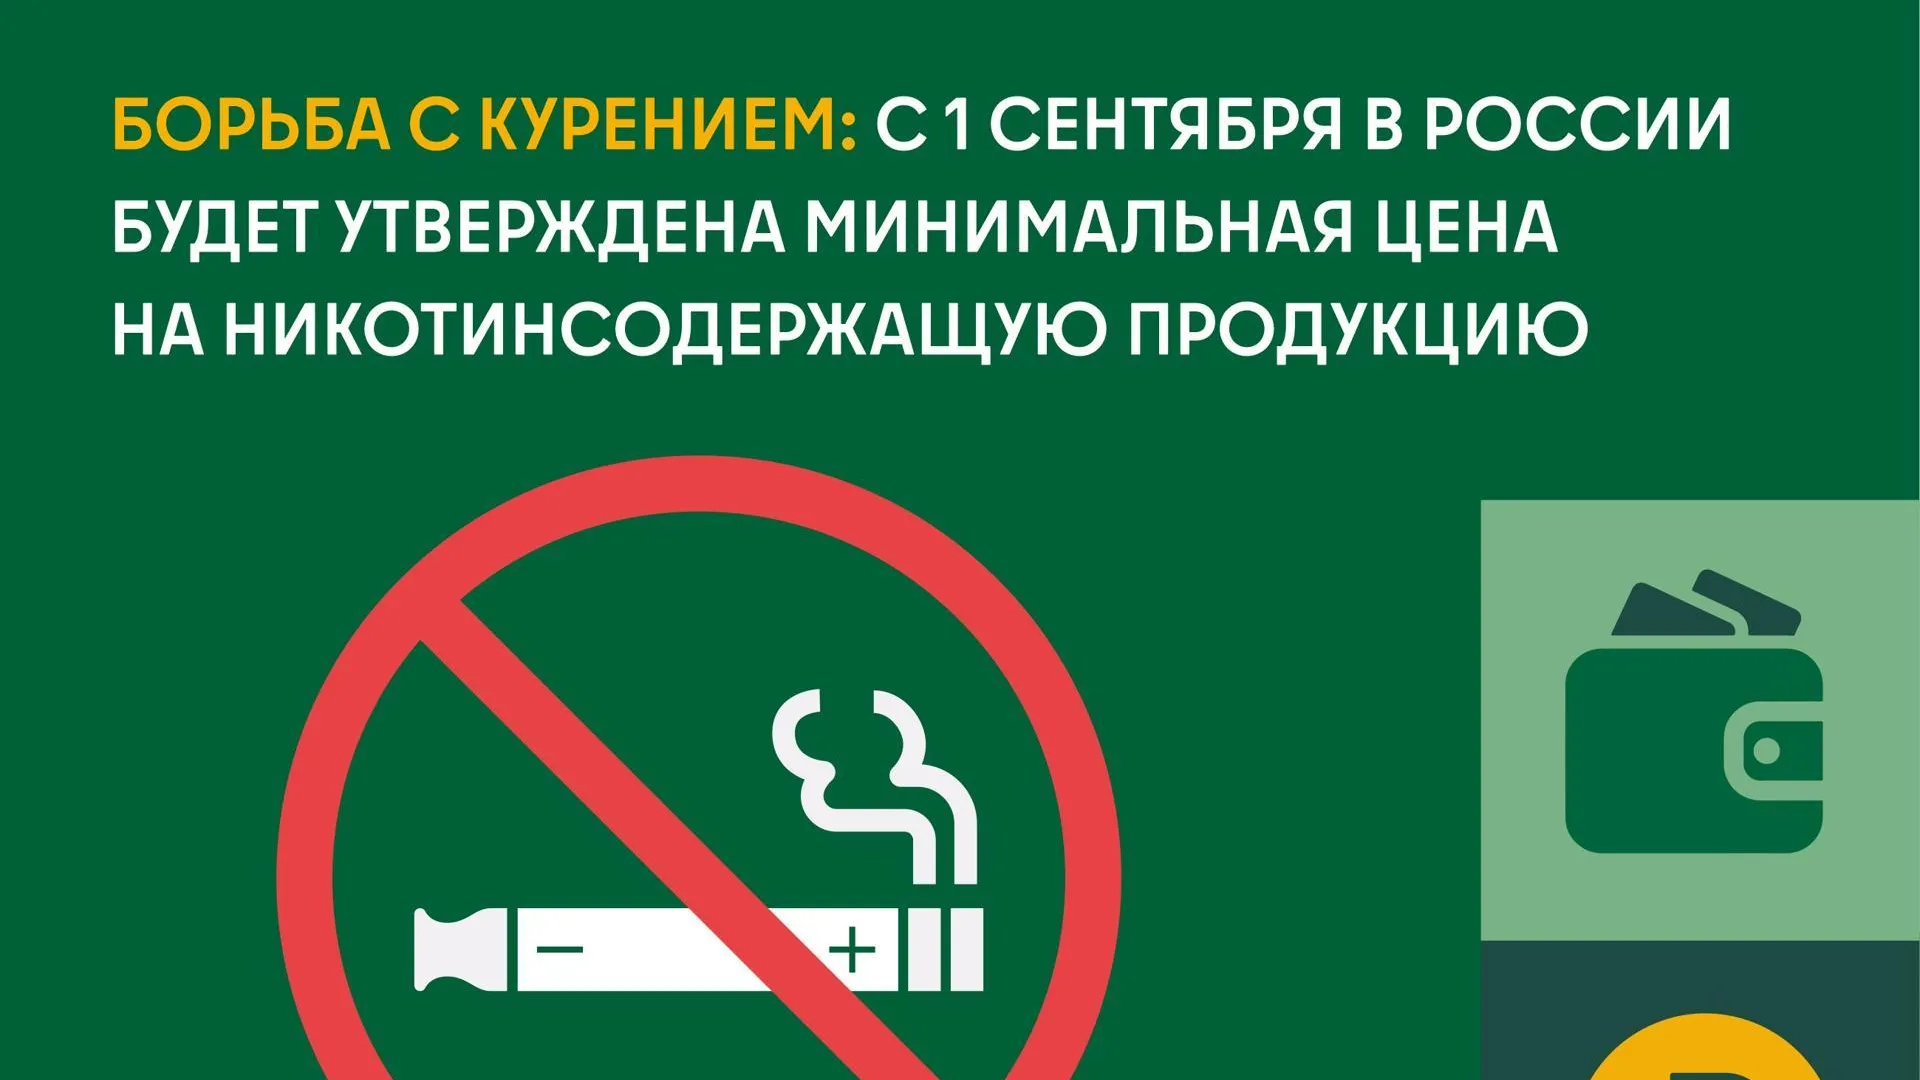 С 1 сентября в РФ утвердят минимальную цену на никотинсодержащую продукцию